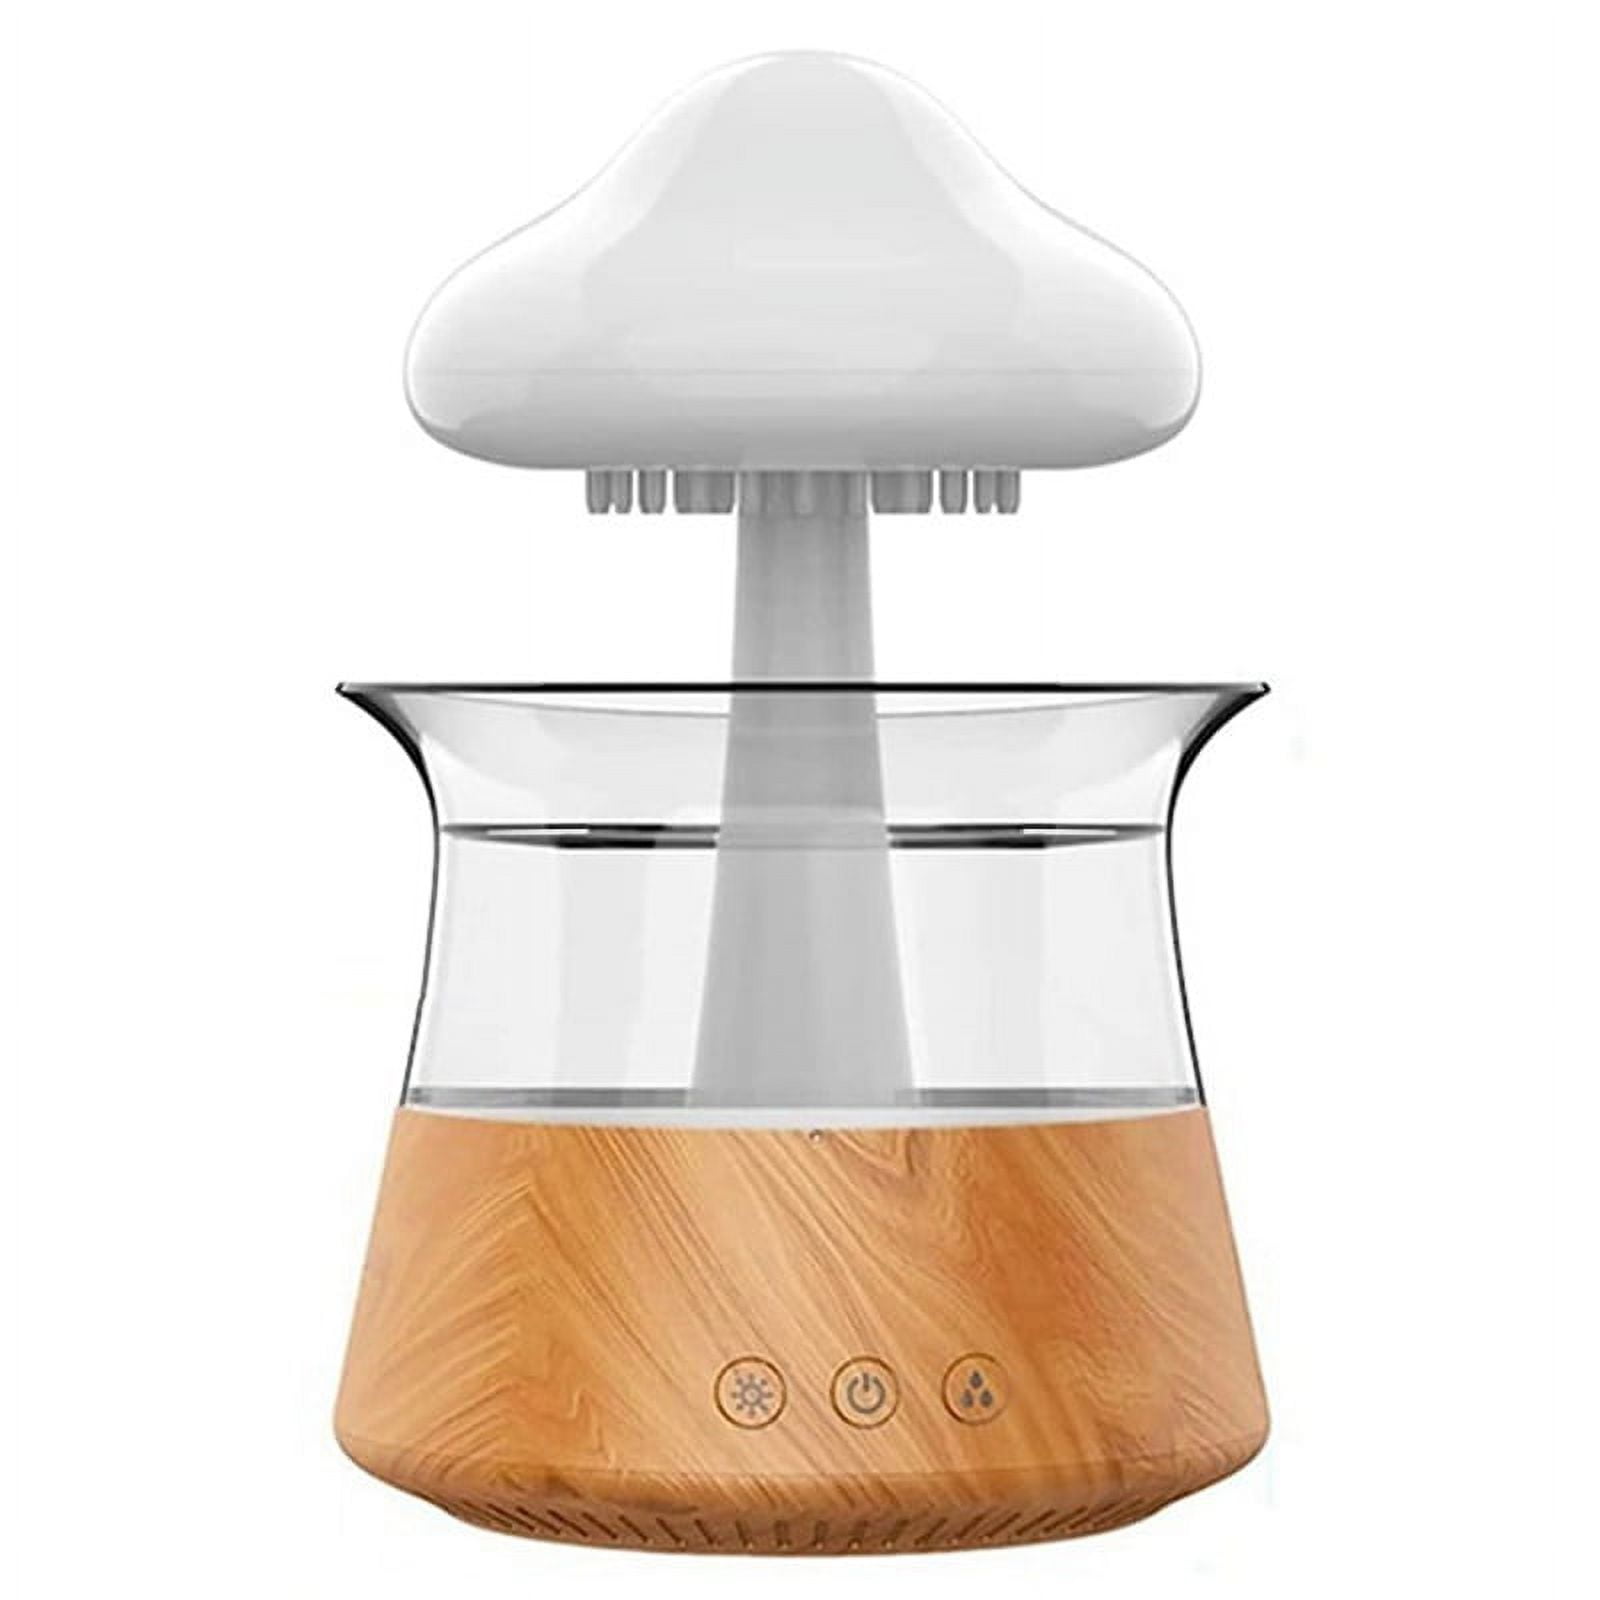 Eccentric Elegance™ MERISH Rain Cloud Humidifier Water Drip Colors Night Light  Mushroom Lamp Diffuser cooling air humidifier at Rs 5999.00, Room  Humidifier